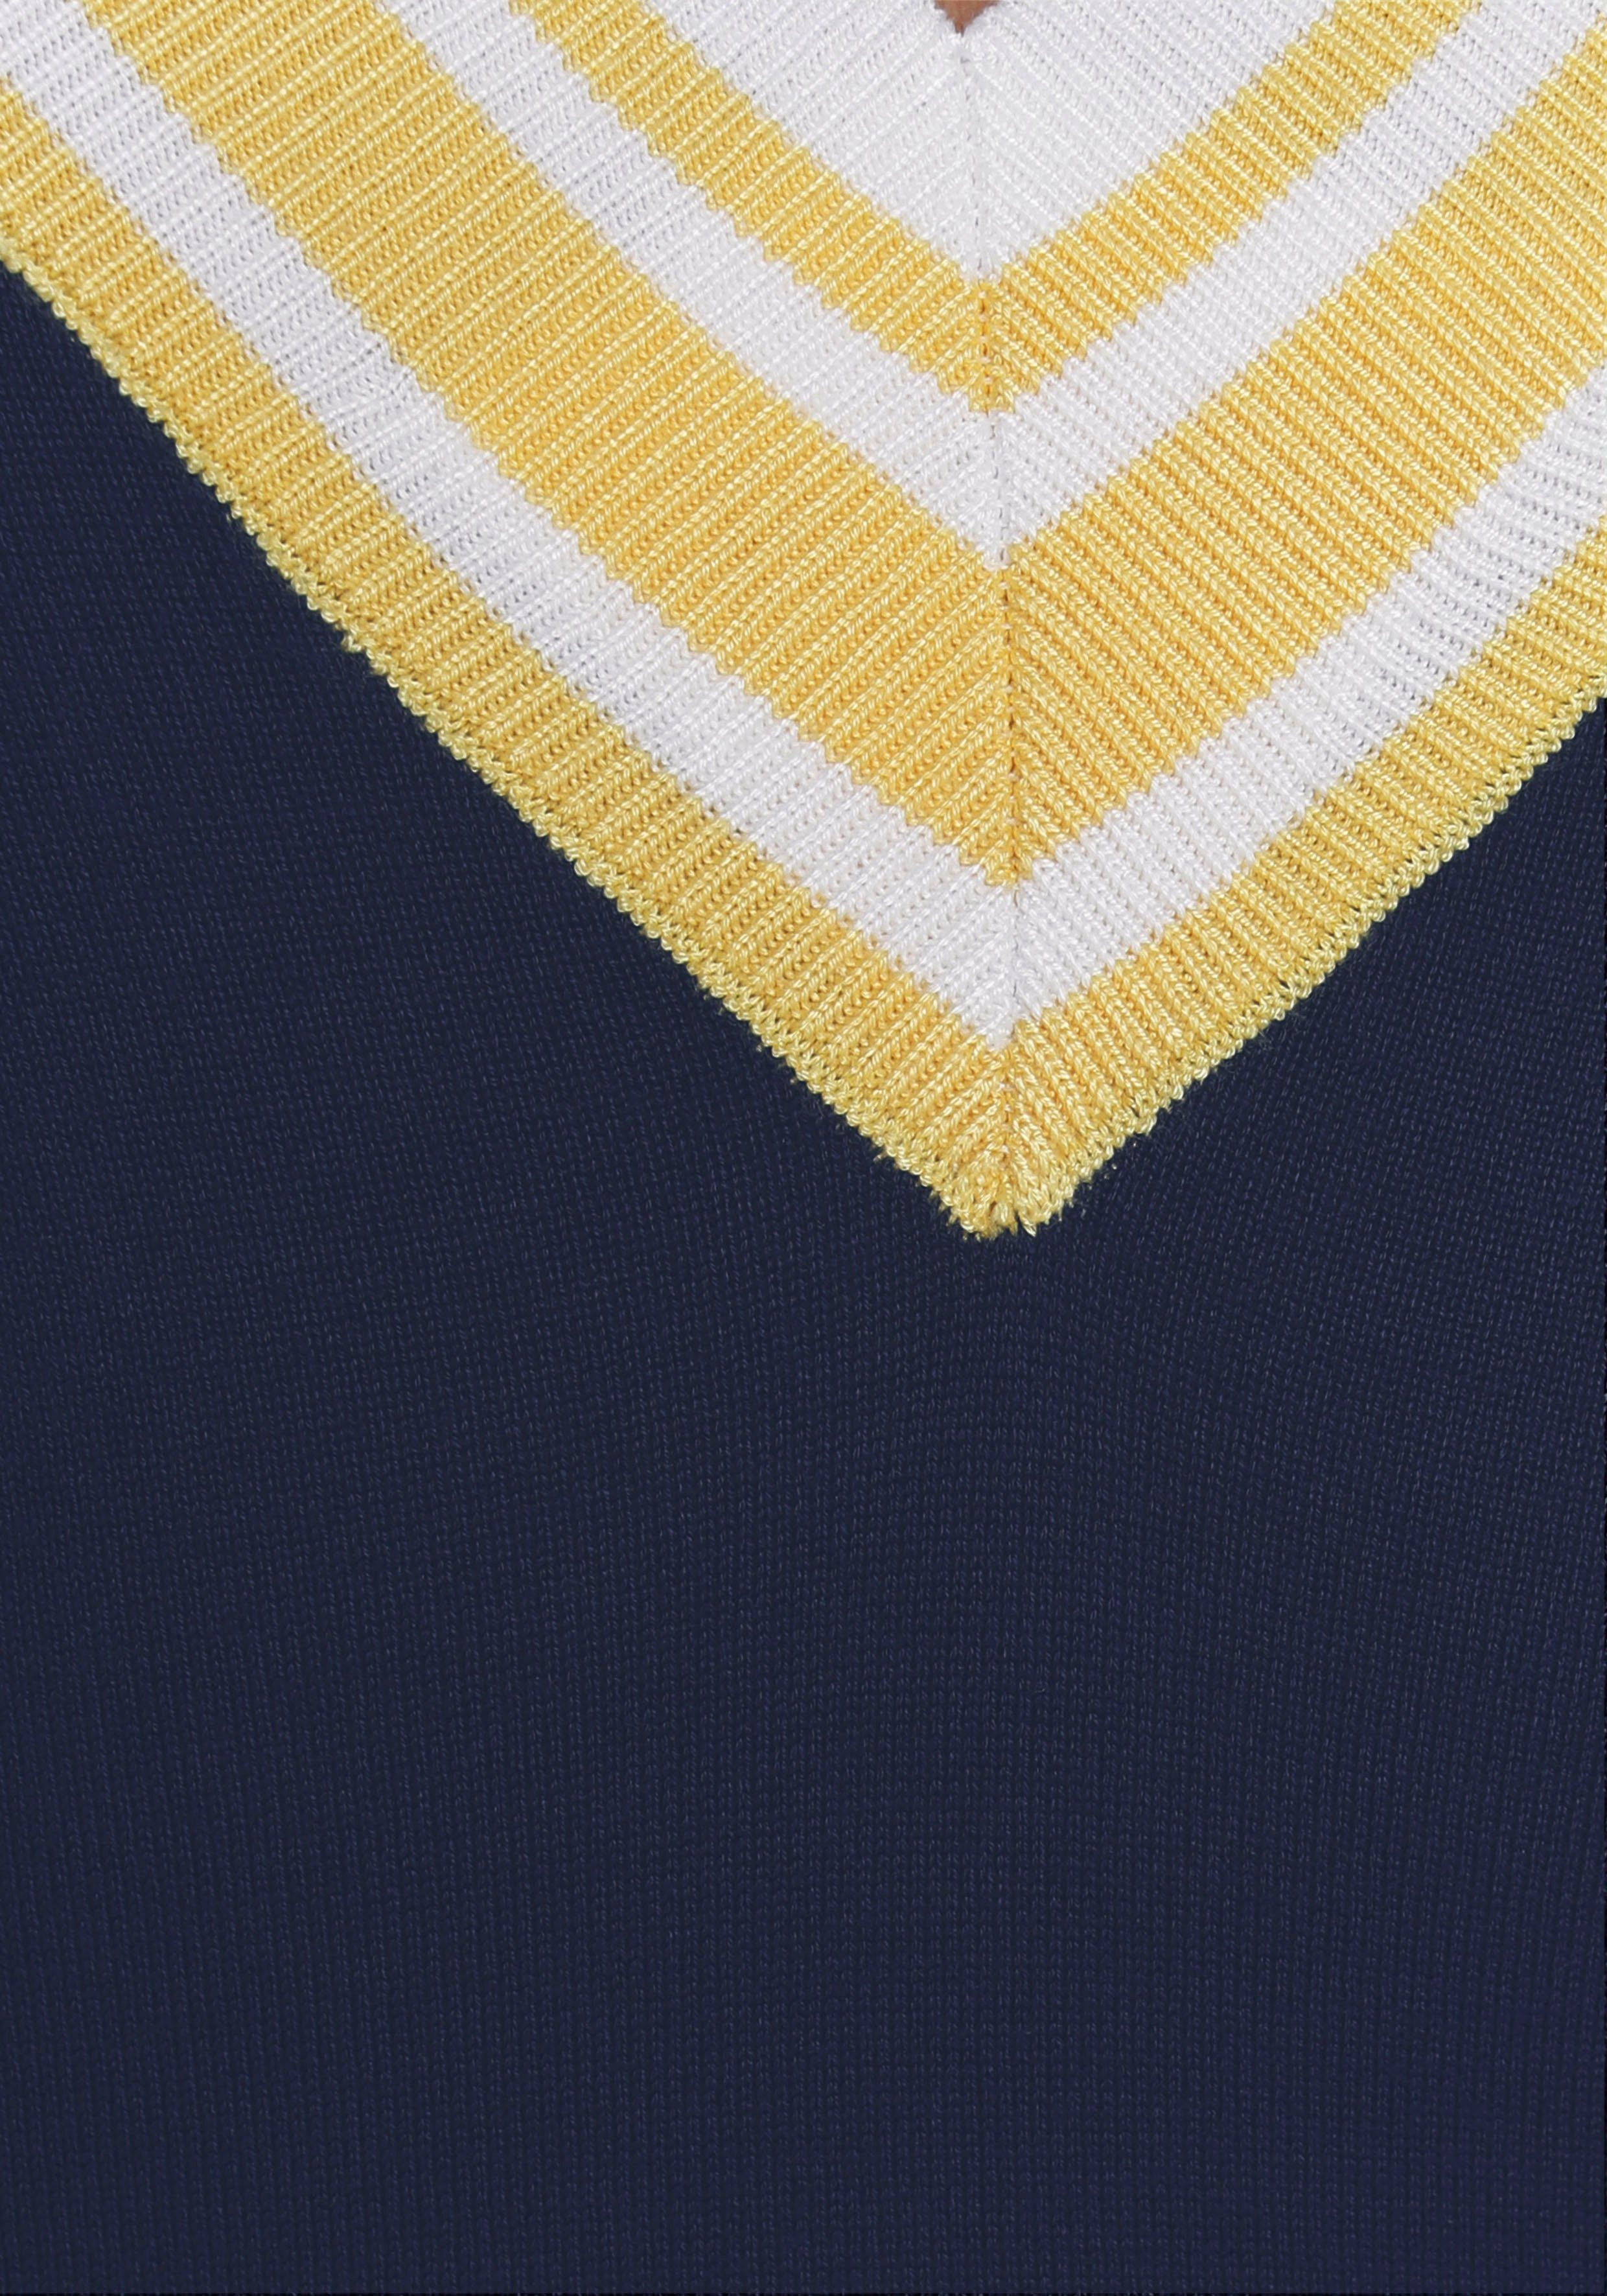 AJC Strickkleid mit tiefem Kontraststreifen V-Ausschnitt & marine-gelb